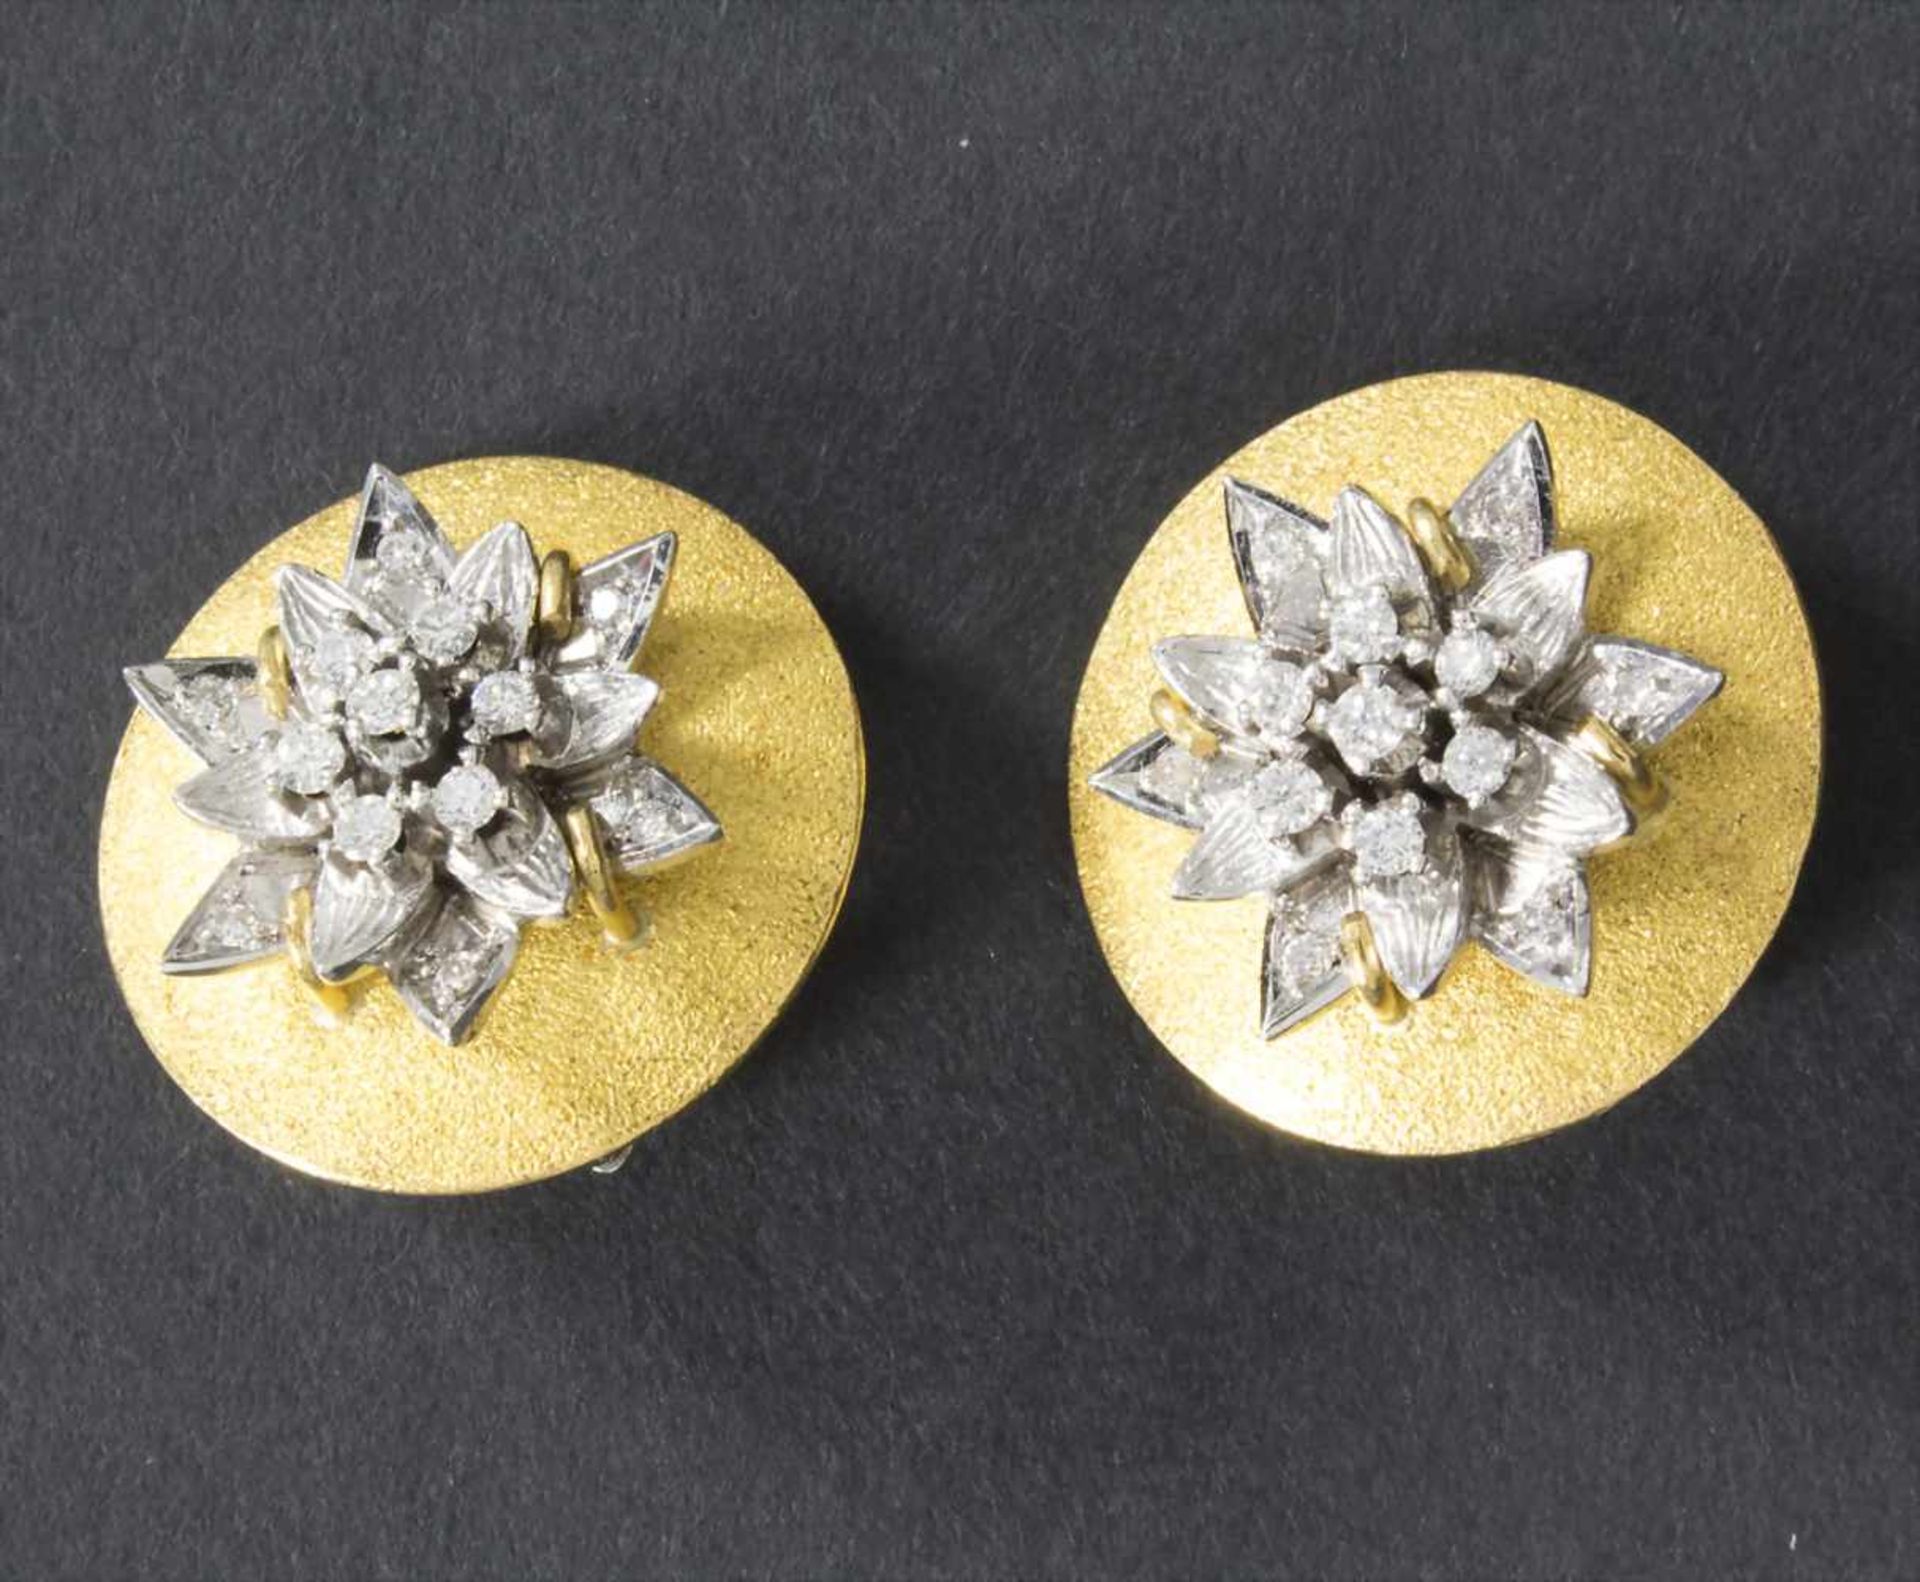 Paar Ohrclips / A pair of earclips,Material: Gelbgold/Weißgold 585/000 14 Kt gepunzt, Diamaten,Maße: